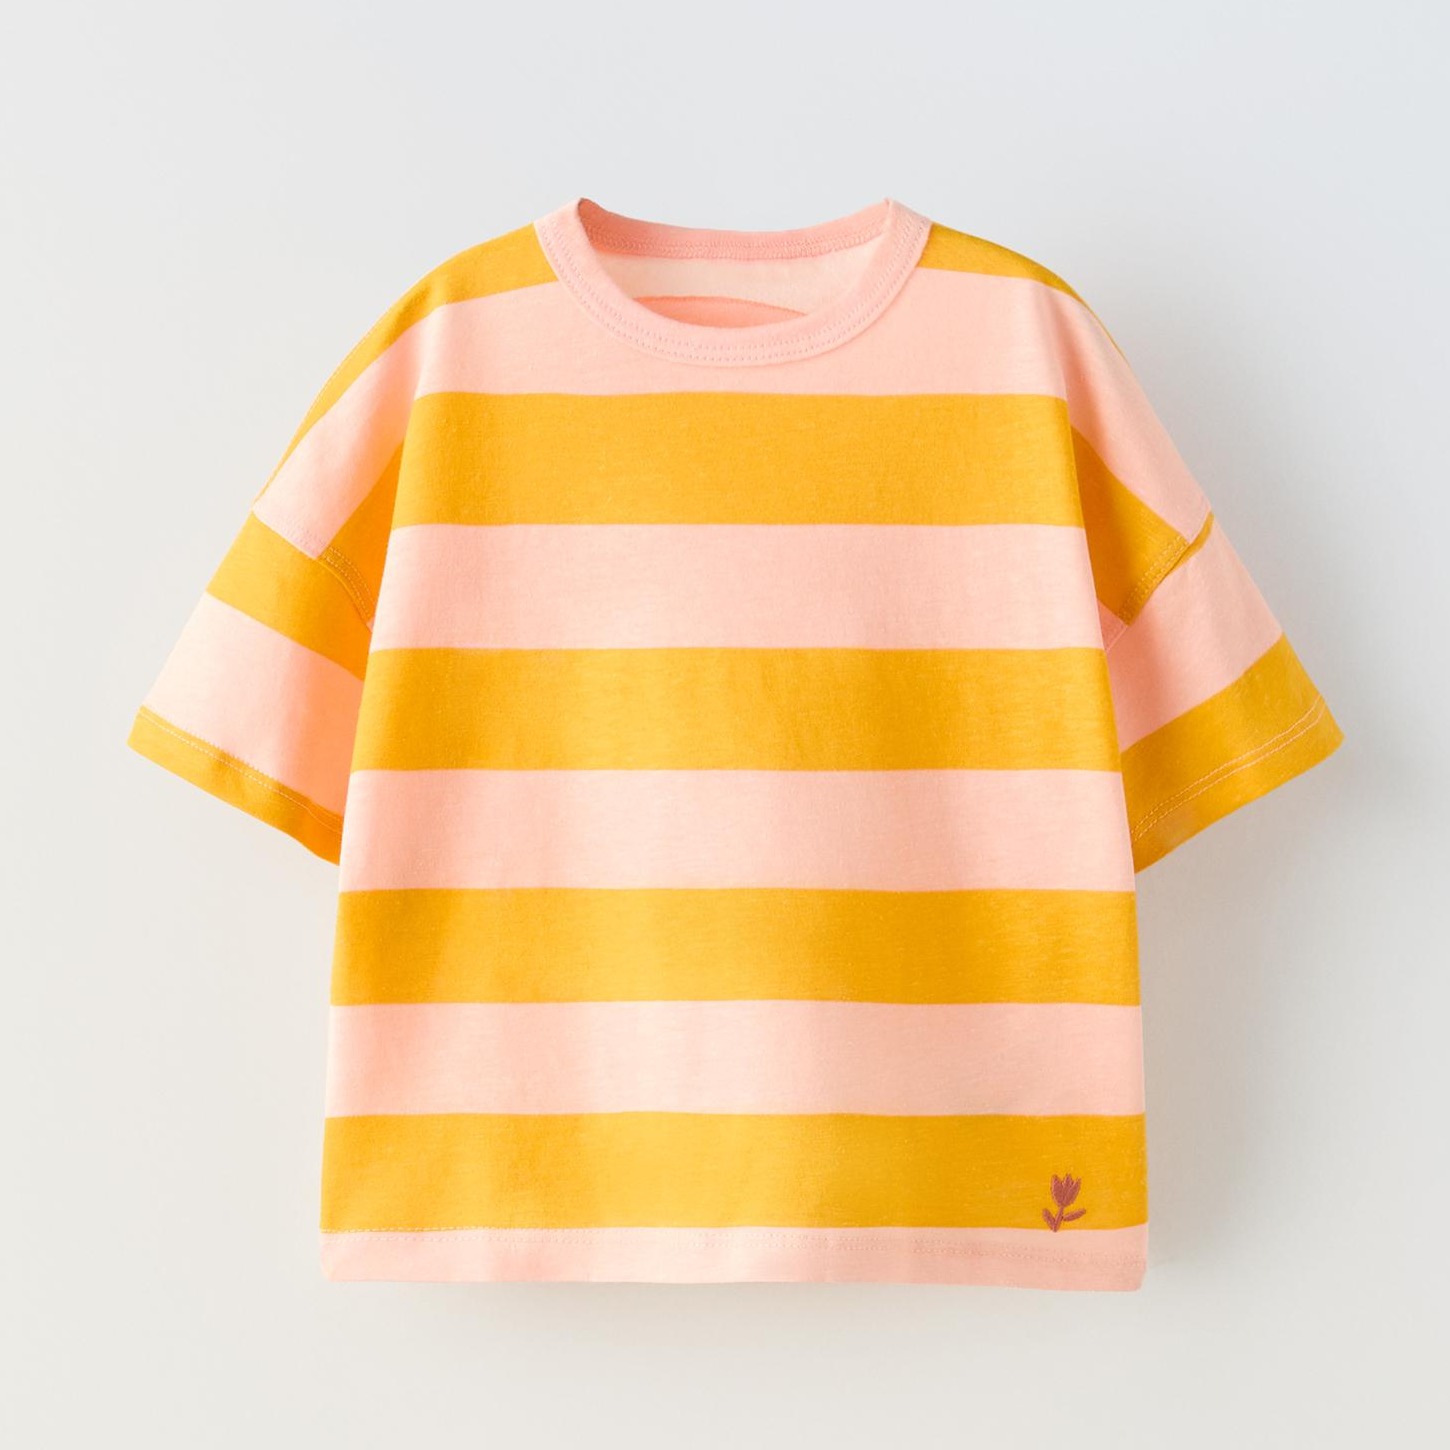 Футболка Zara Striped Embroidered, бежевый/розовый